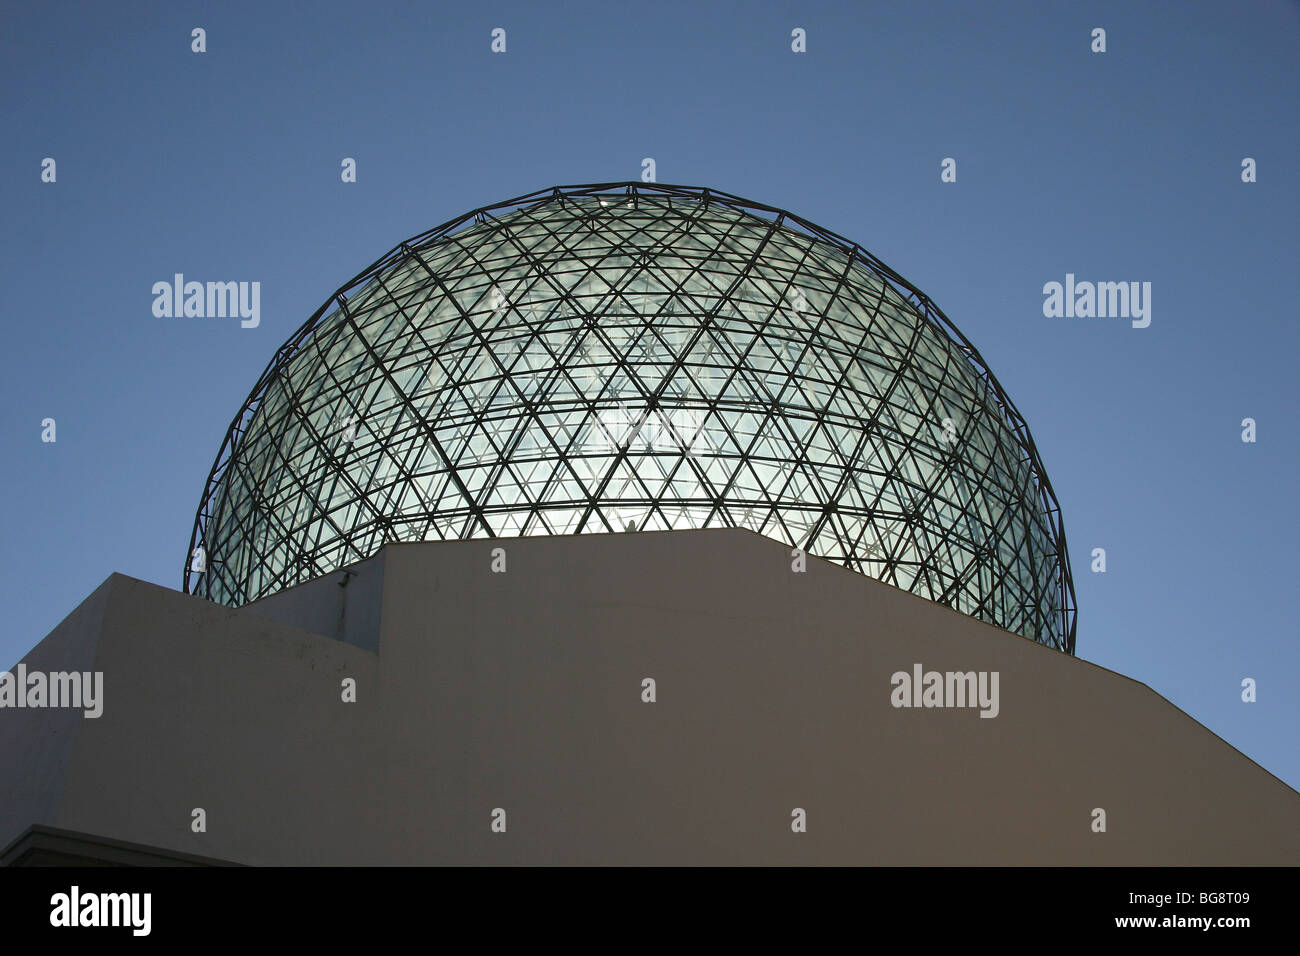 Dali Museum. Dome. Catalonia. Spain. Stock Photo